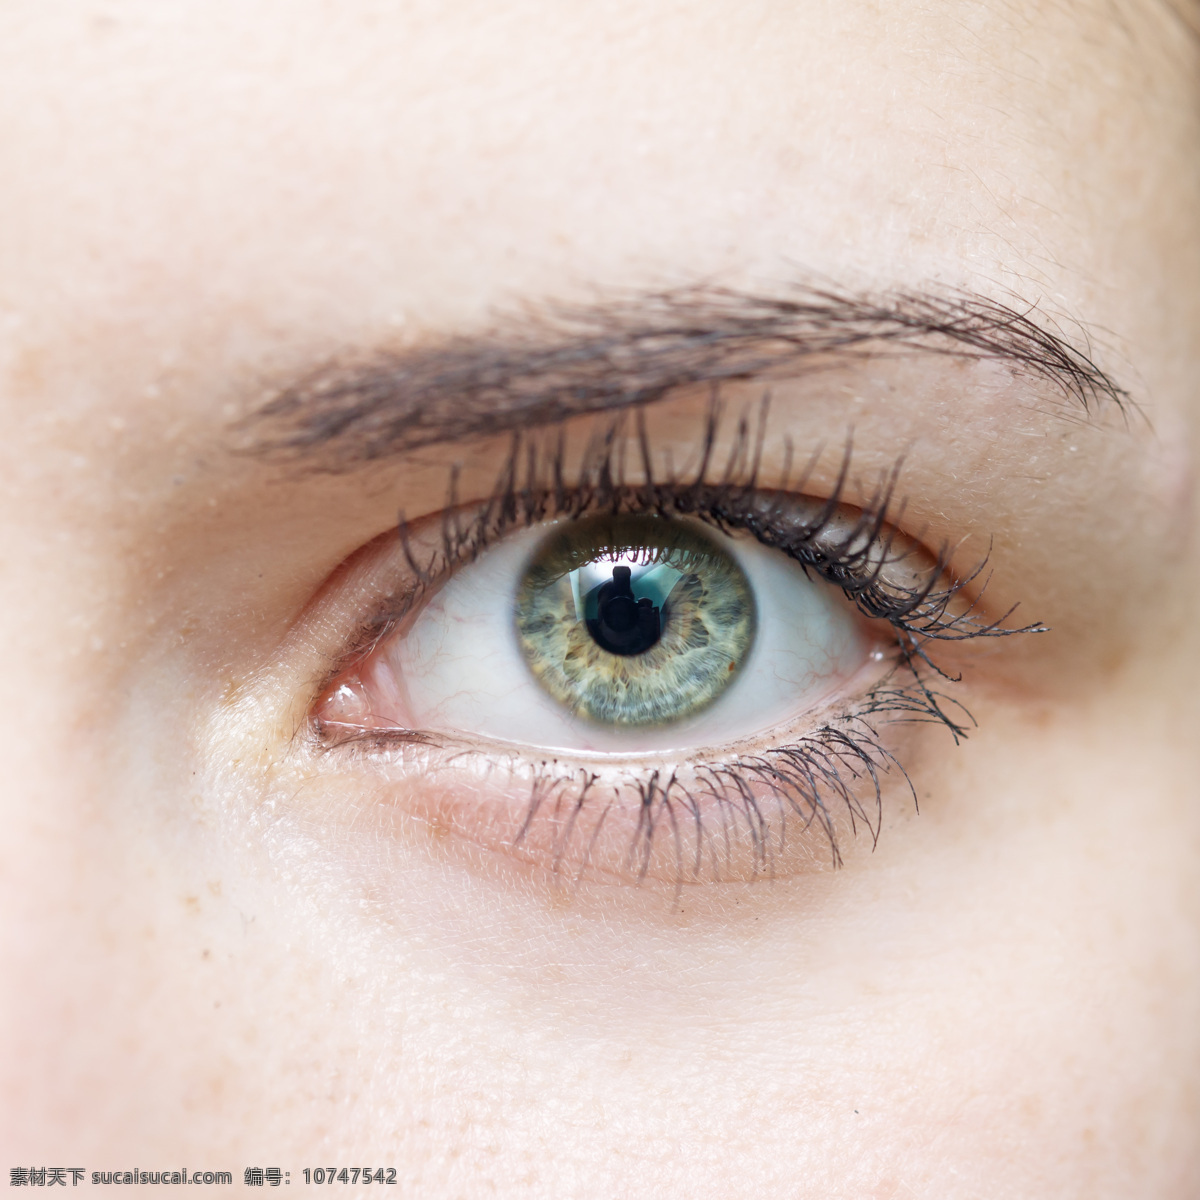 女性 眼睛 特写 睫毛 眼睛特写 瞳孔 眼珠 眼球 女性眼睛 人体器官图 人物图片